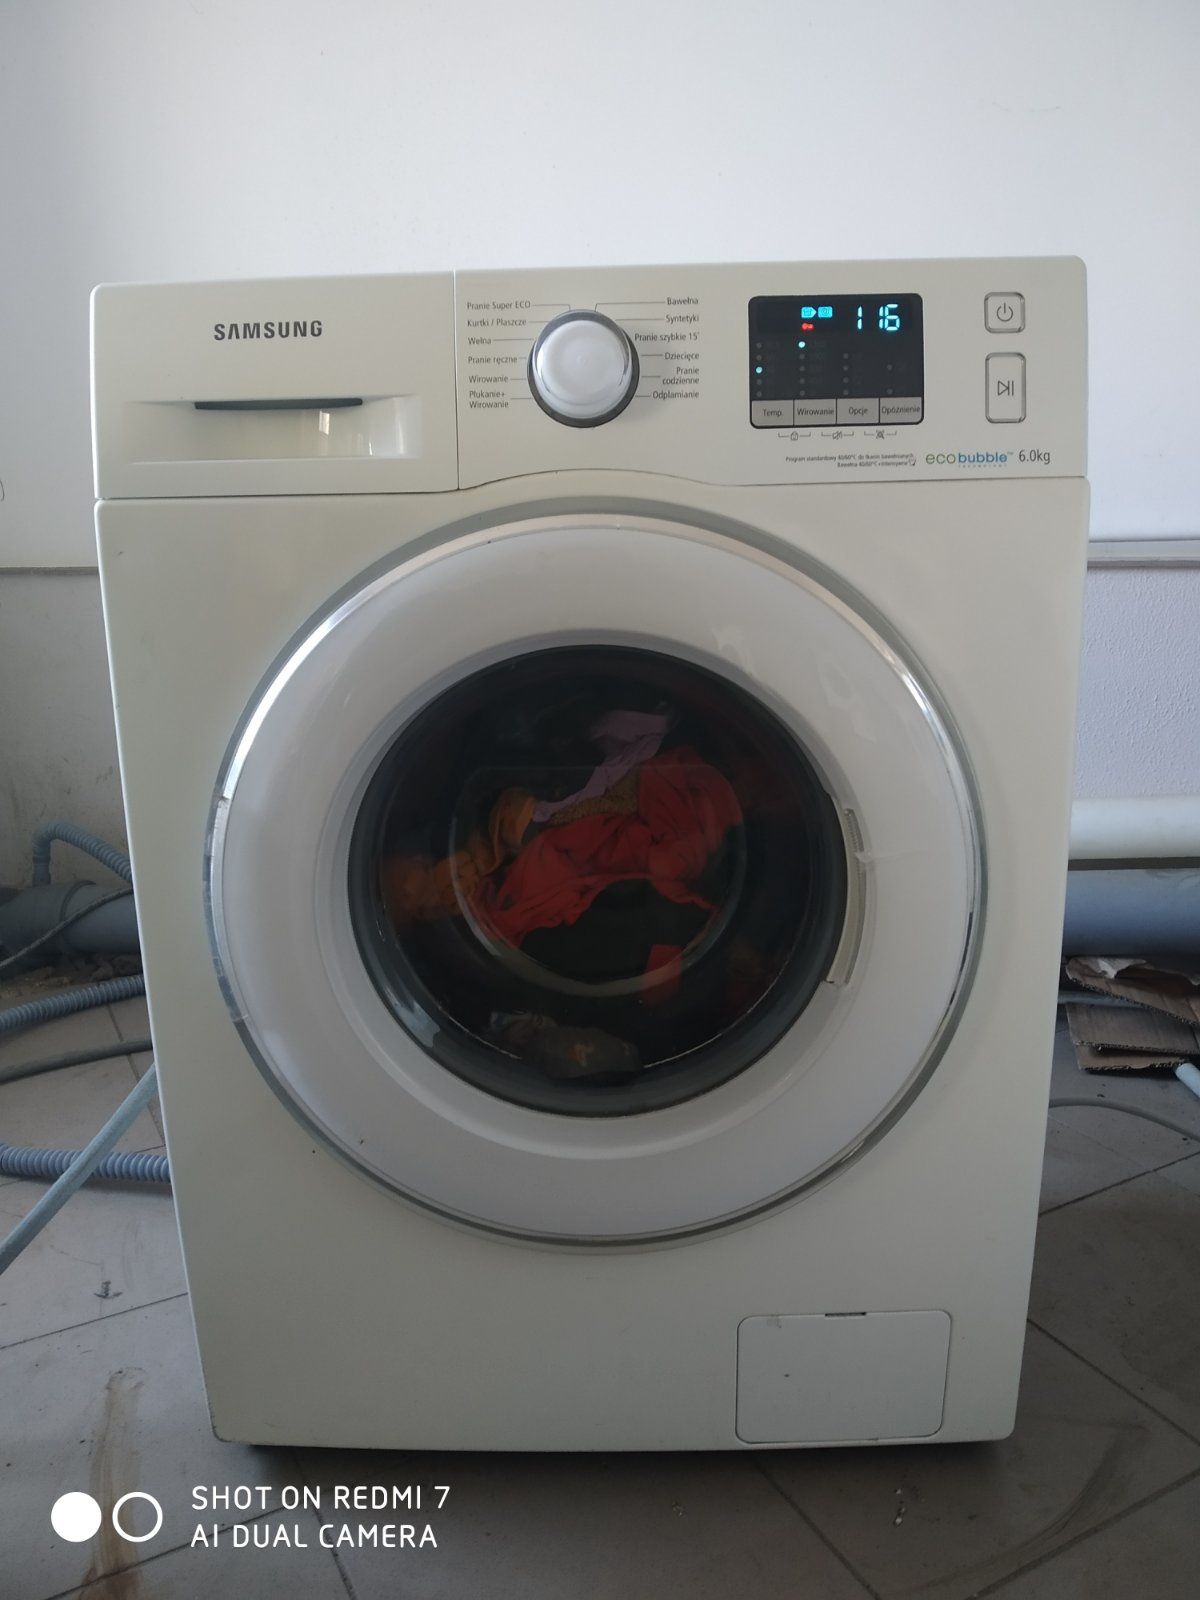 Продам пральну машинку